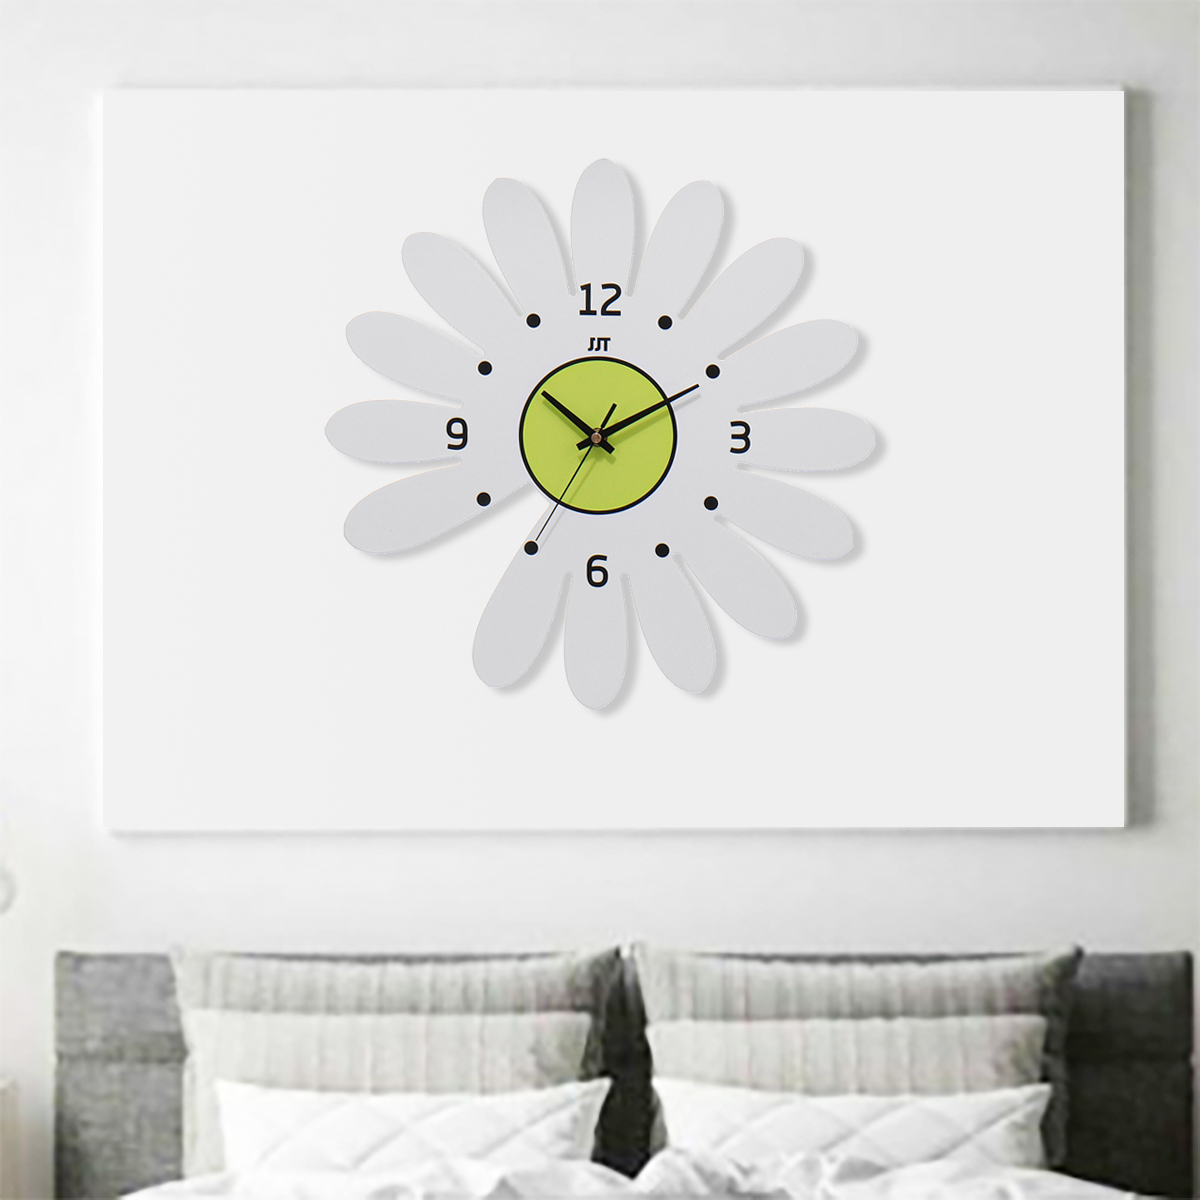 Daisy Flower Wall Clock Hanging Silent Quartz Battery Powered Watch Home Decor